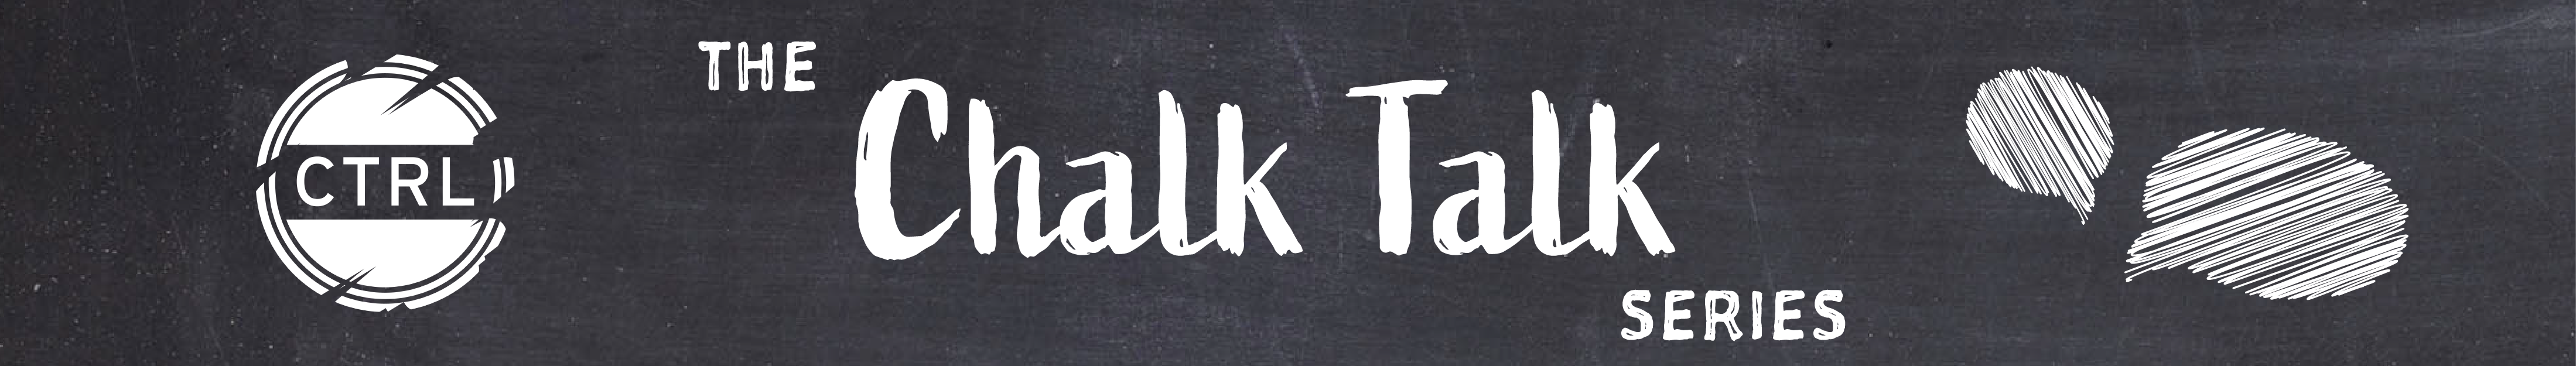 The Chalk Talk Series